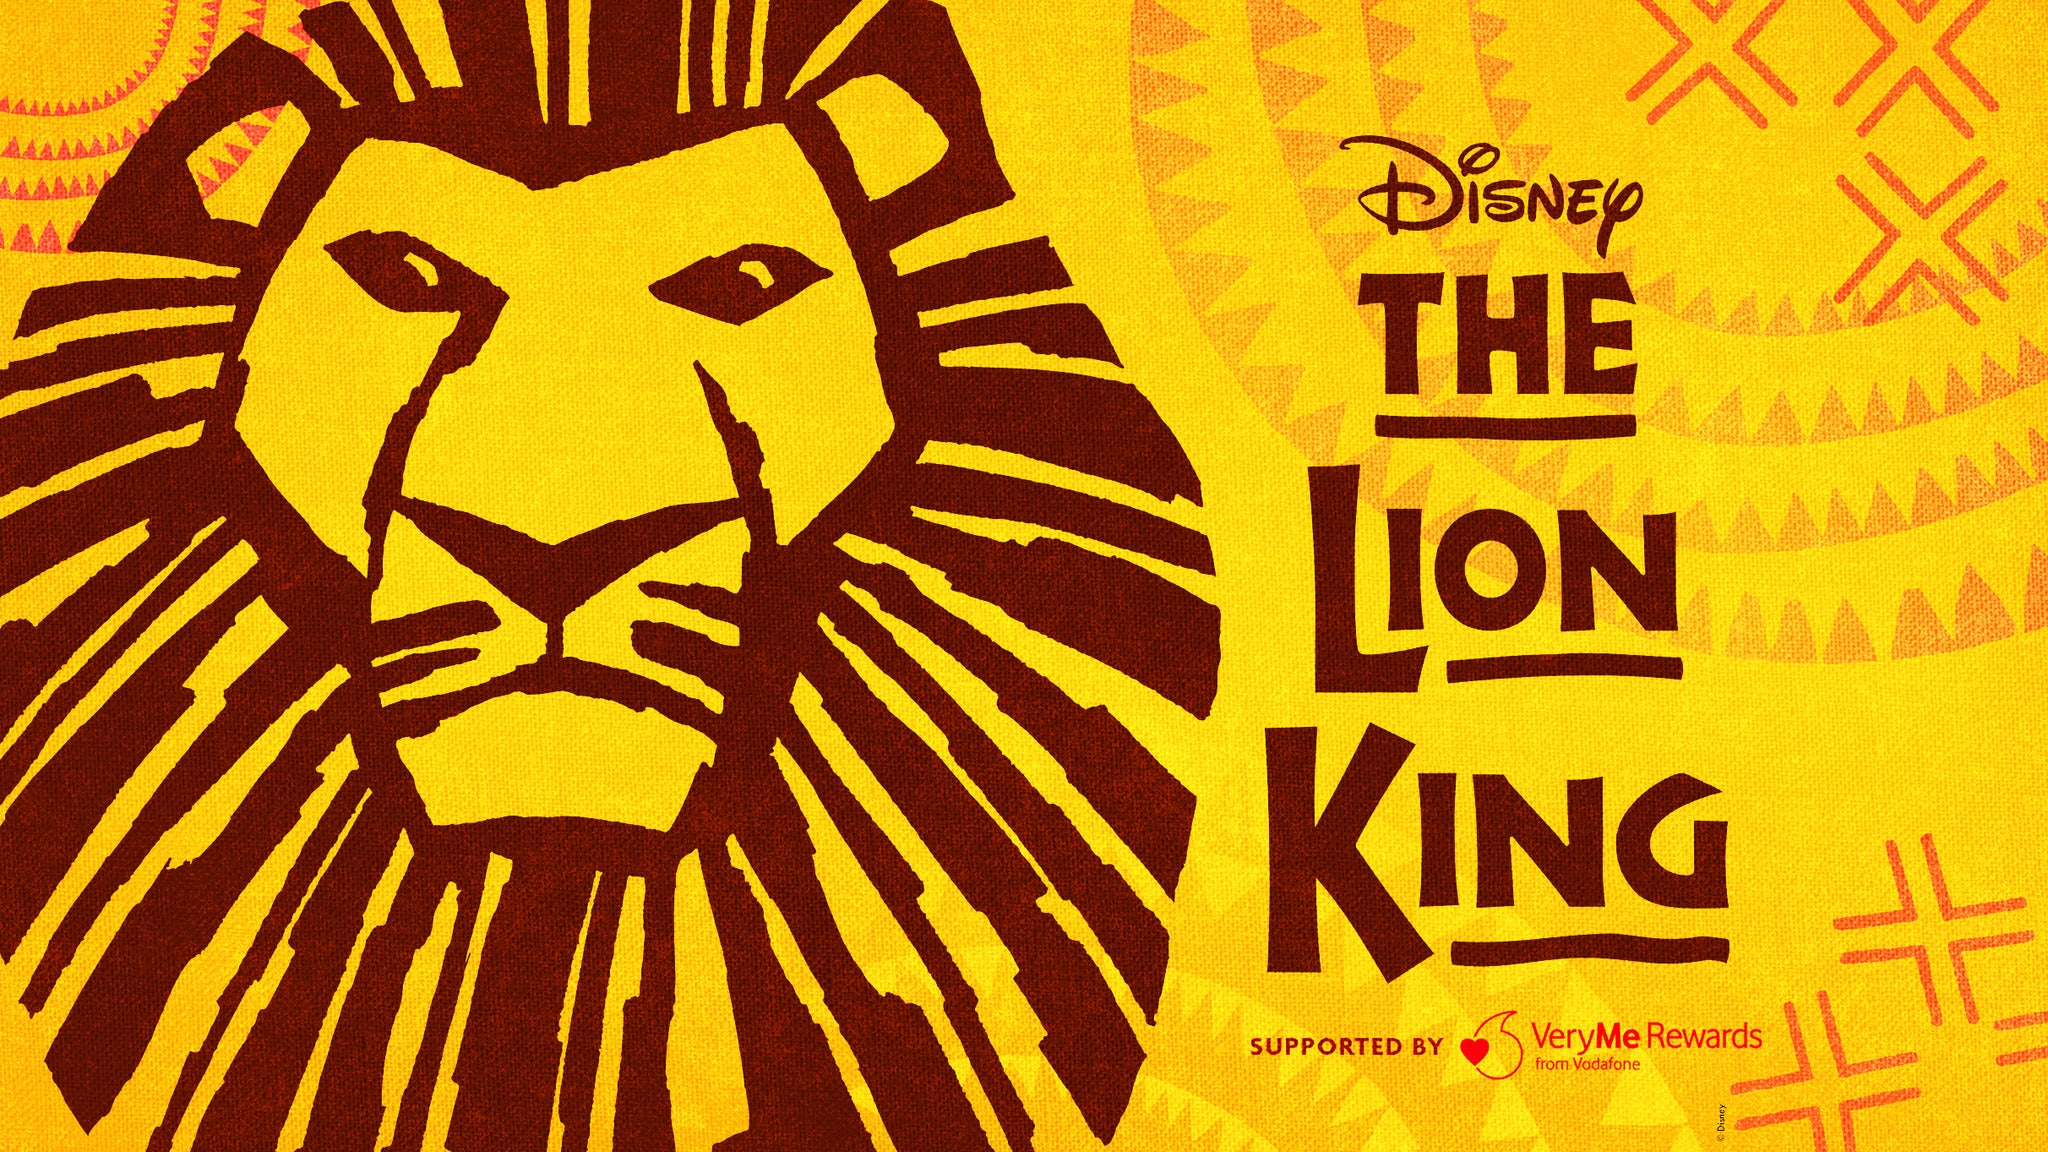 Disney’s The Lion King - UK Tour